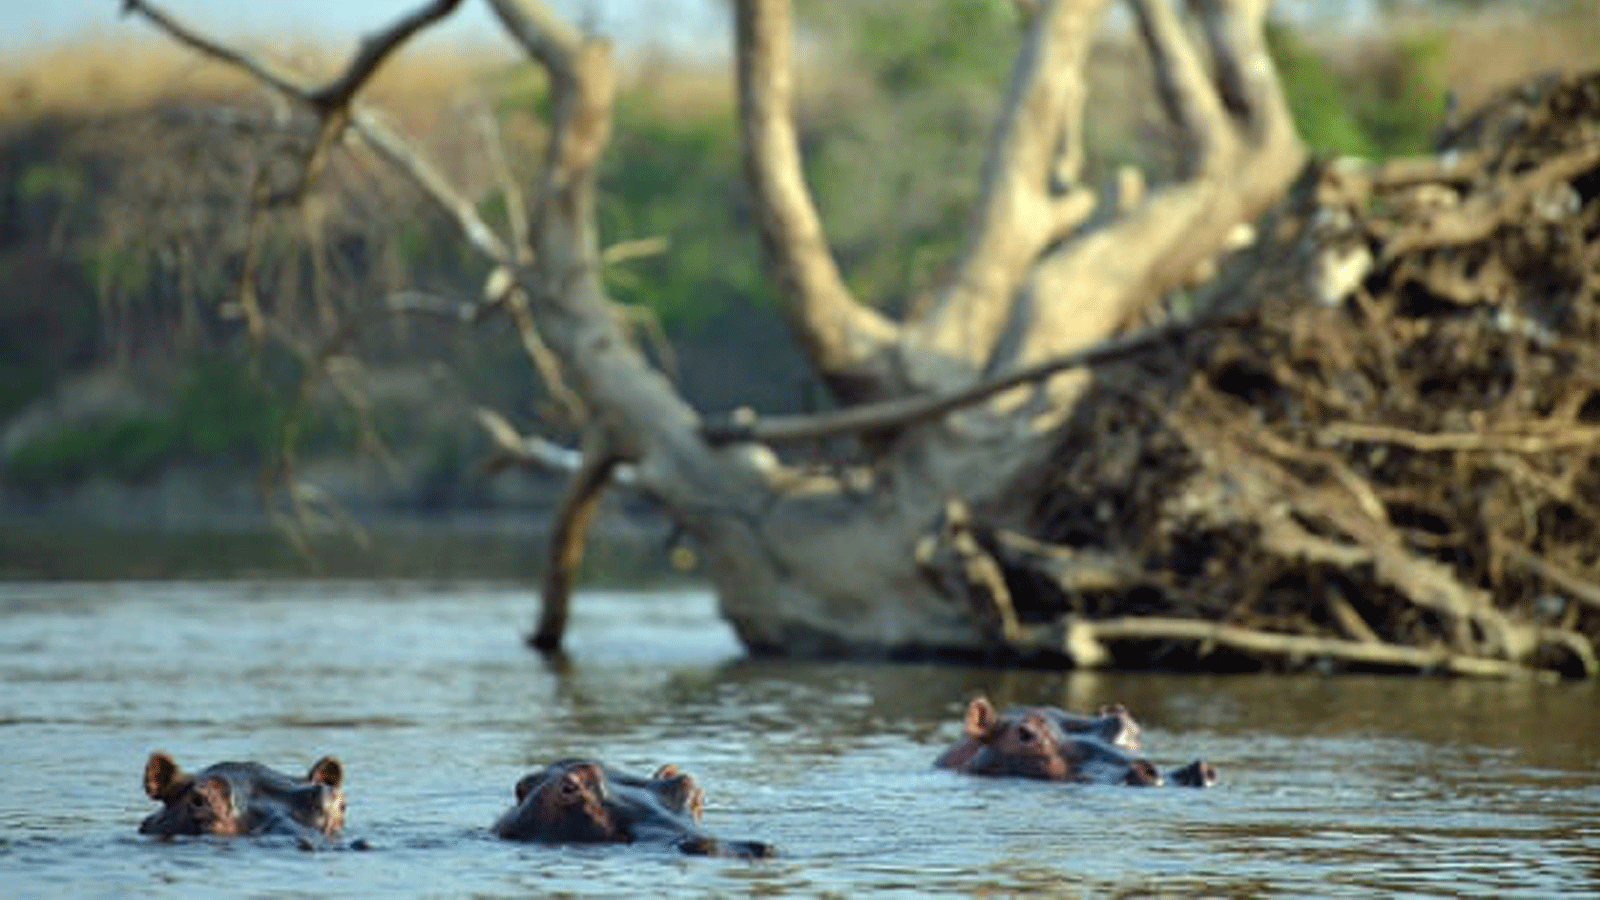 فرس النهر في المياه الضحلة لنهر دونغو(Dungu) في حديقة غارامبا (Garamba) الوطنية